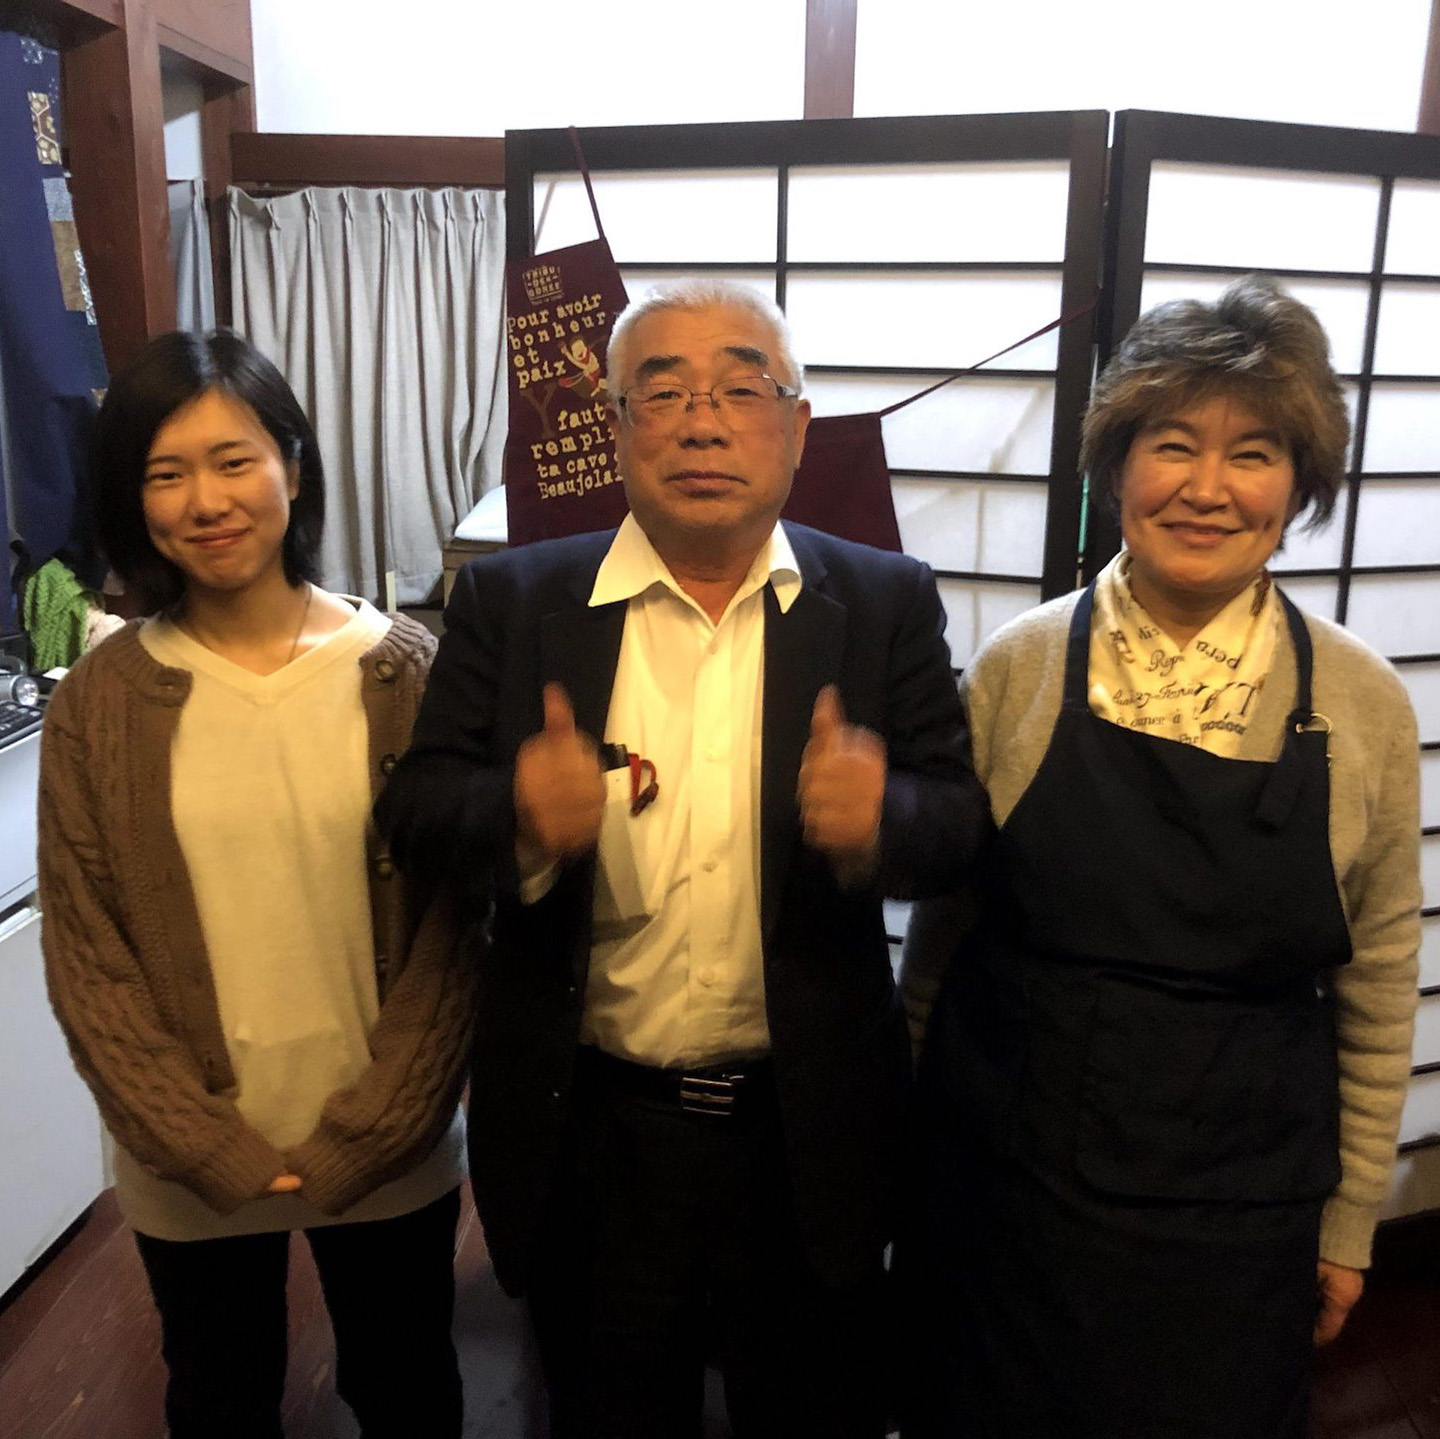 左から、多田真由美さん、多田喜一郎さん、多田寛子さん